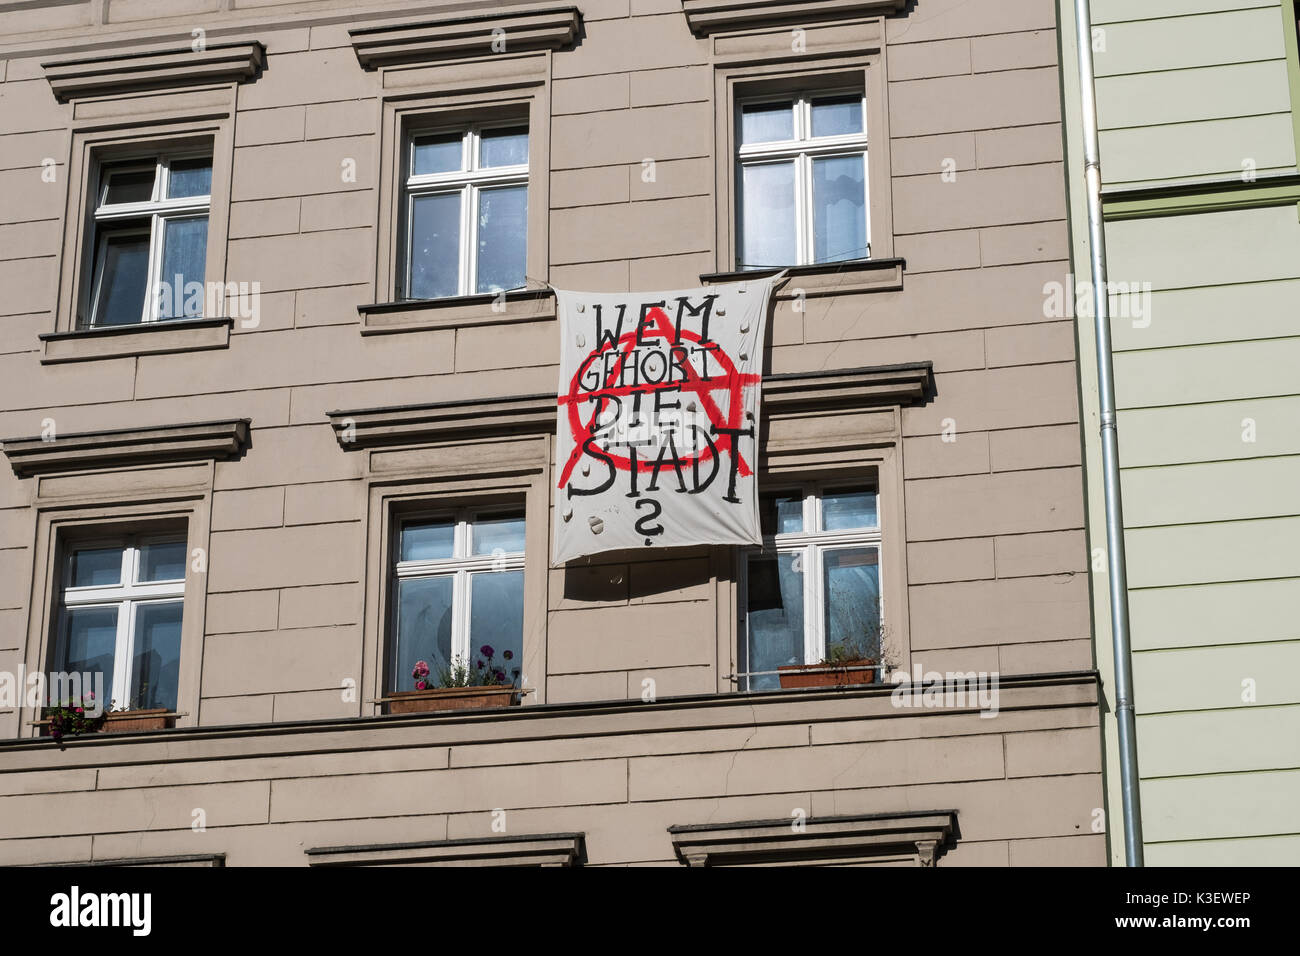 Berlín, Alemania, circa agosto, 2017: alemán protesta lema colgado en fachada de edificio en Berlín diciendo "Wem gehört die Stadt" ( "a quien pertenece el Foto de stock